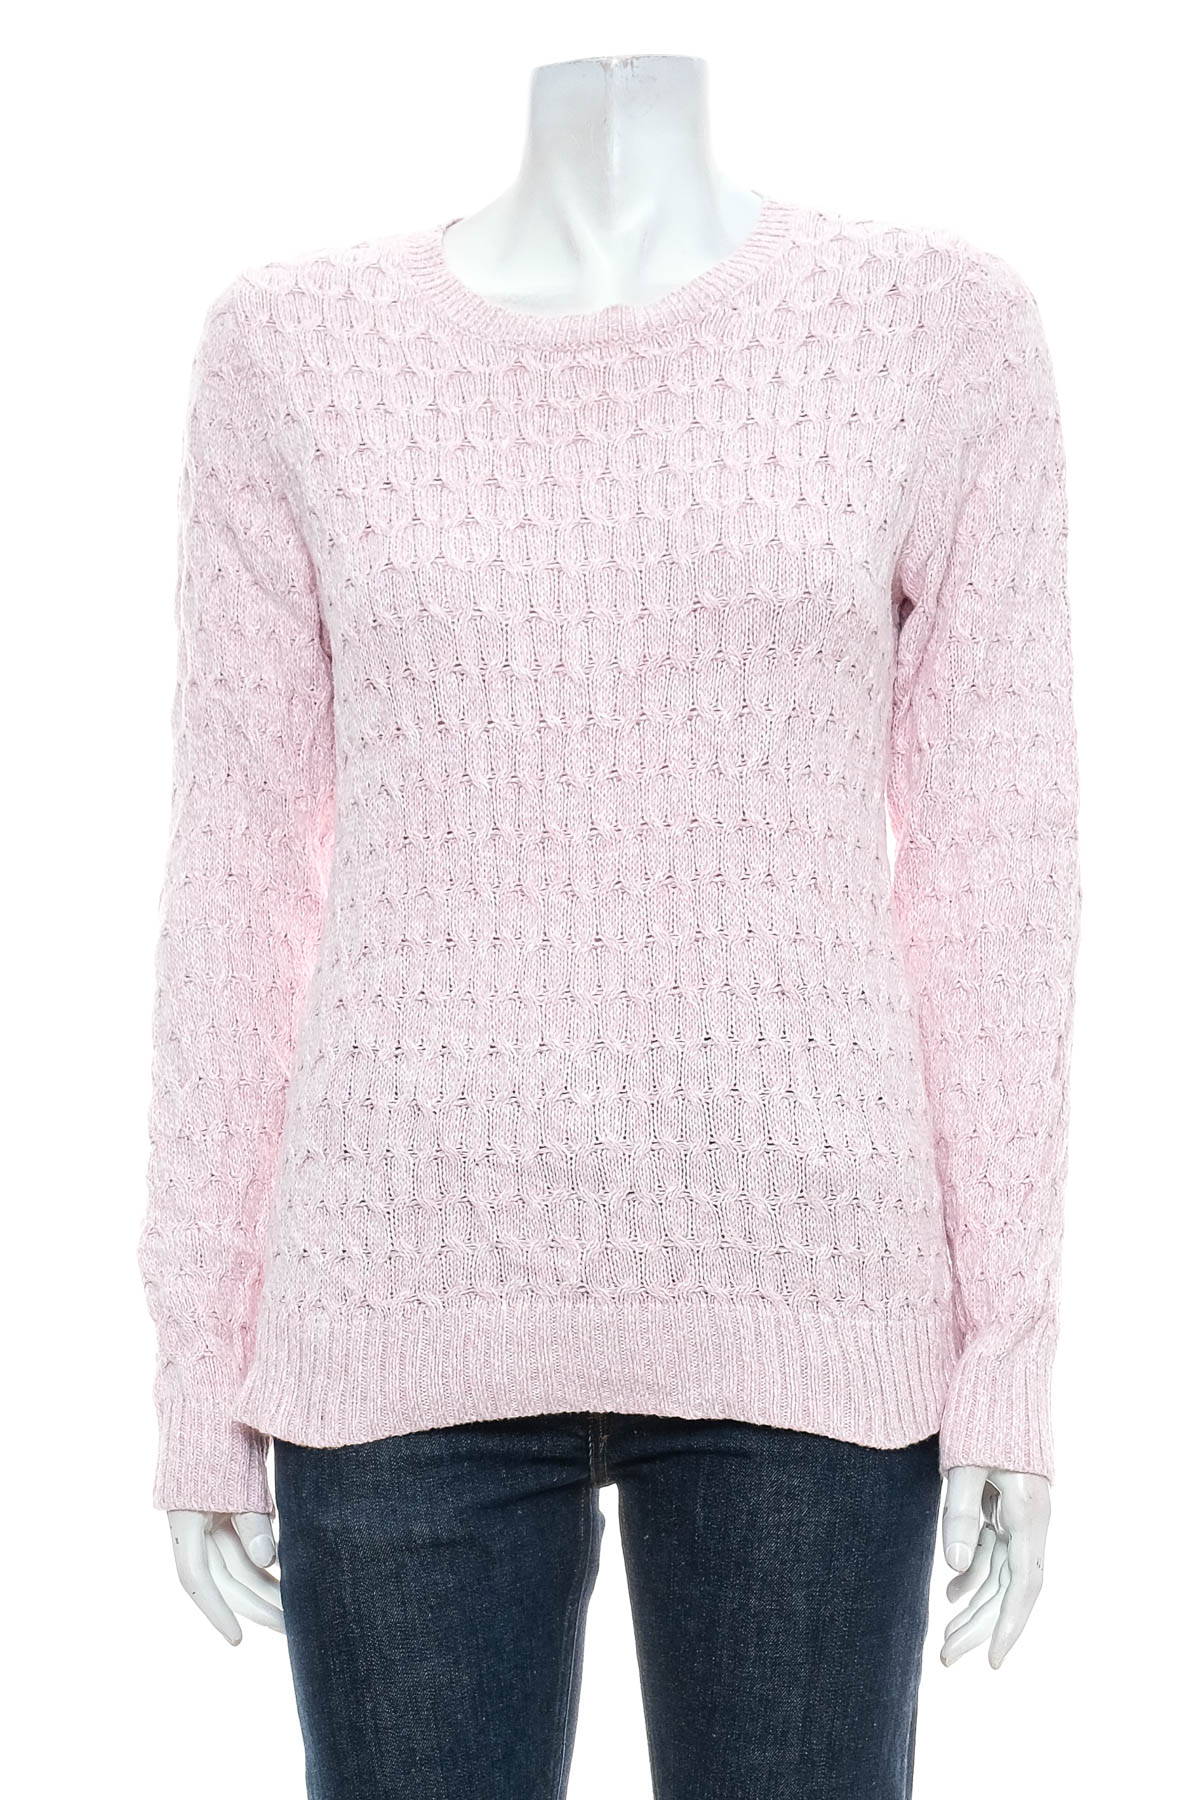 Women's sweater - Croft & Barrow - 0